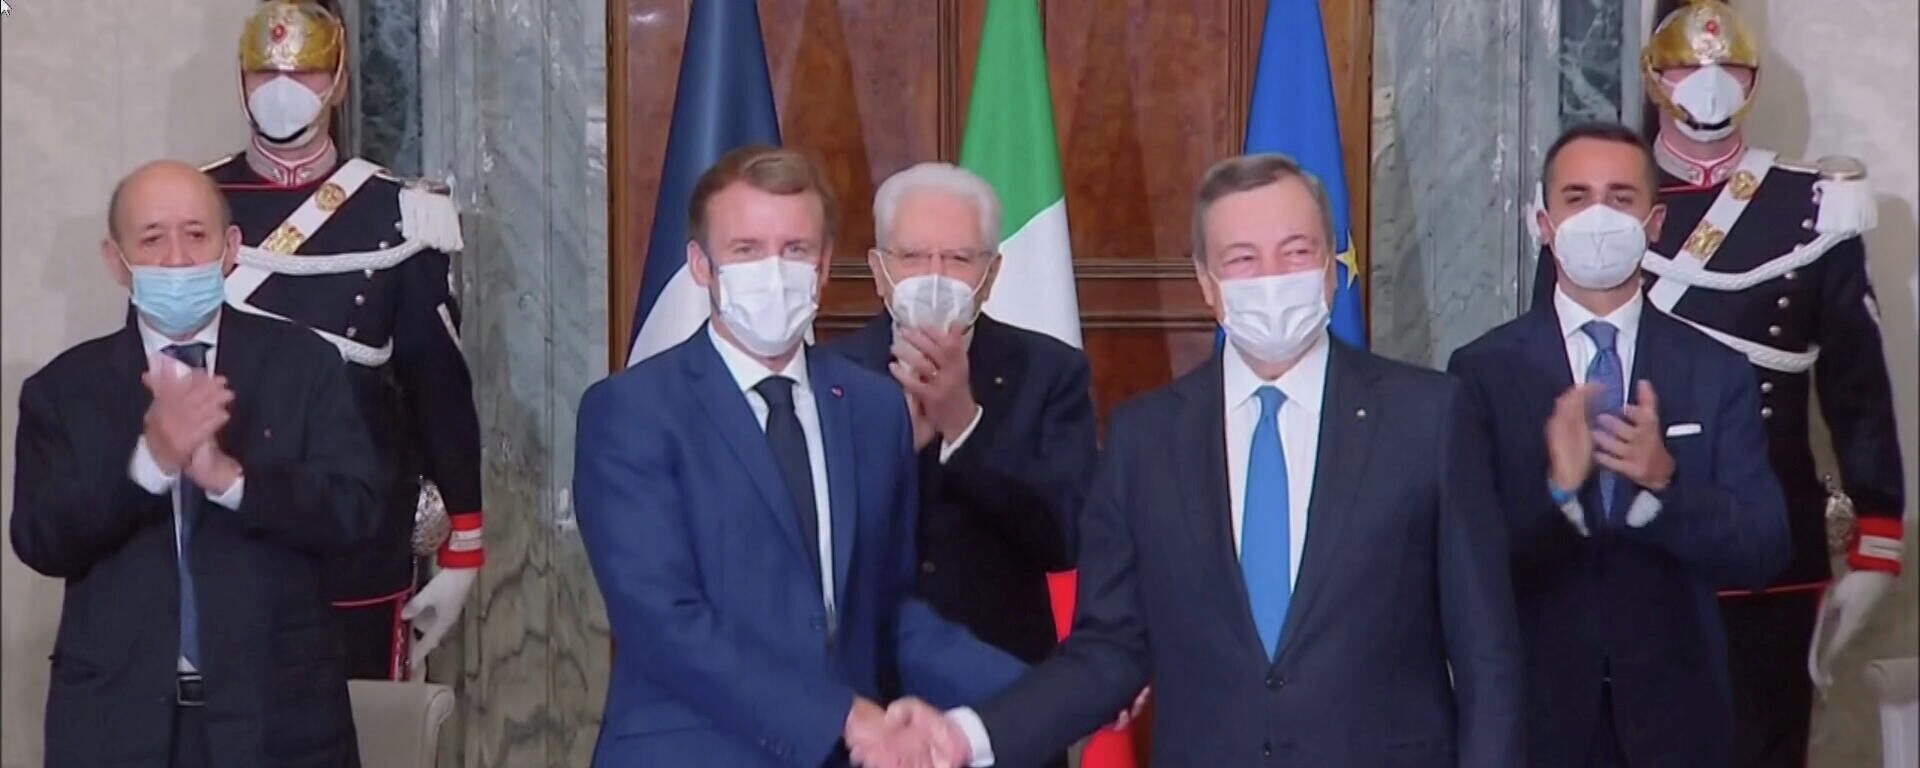 El presidente de Francia, Emmanuel Macron, y el primer ministro de Italia, Mario Draghi - Sputnik Mundo, 1920, 26.11.2021